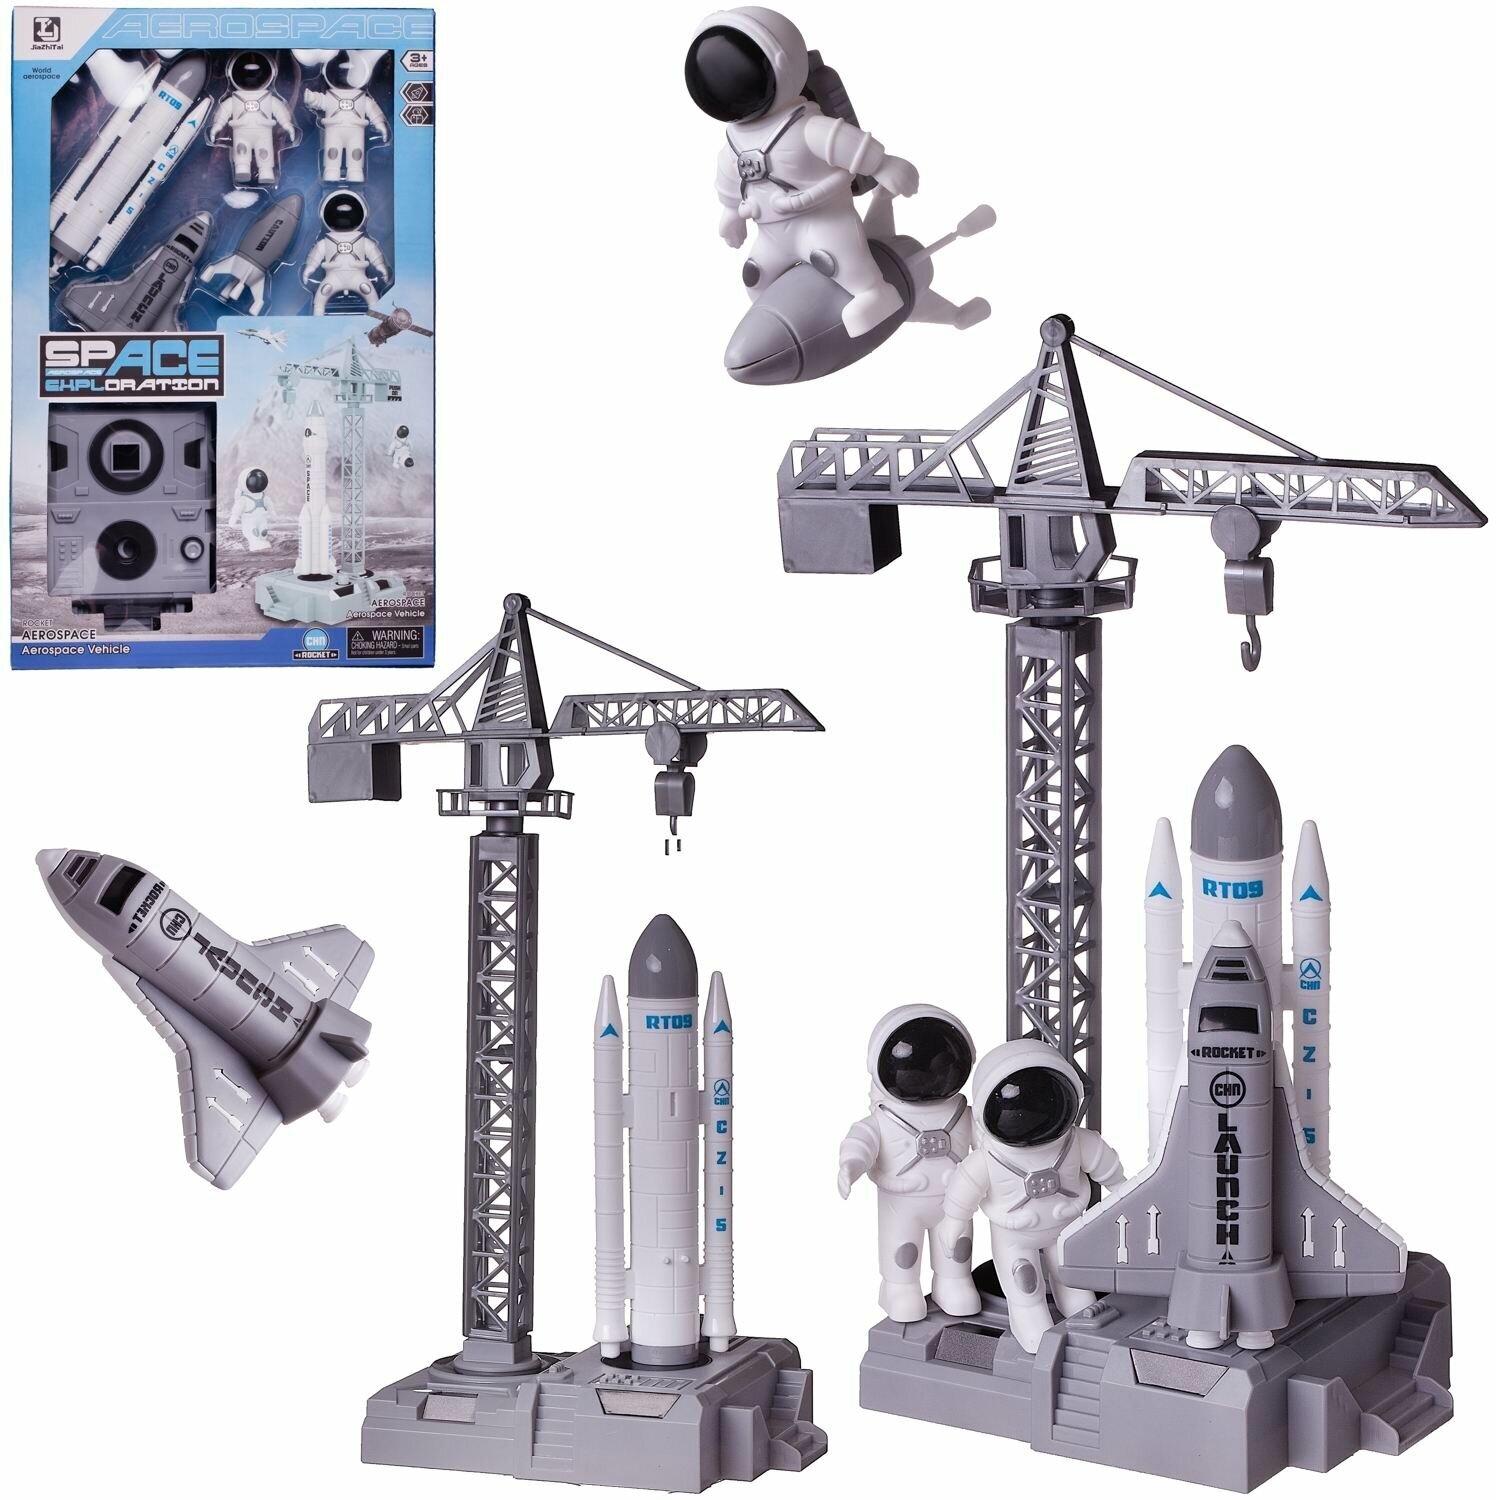 Игровой набор Junfa Покорители космоса: стартовая площадка с ракетой, шаттлом, мини-ракетой и 3 космонавтами WE-13927